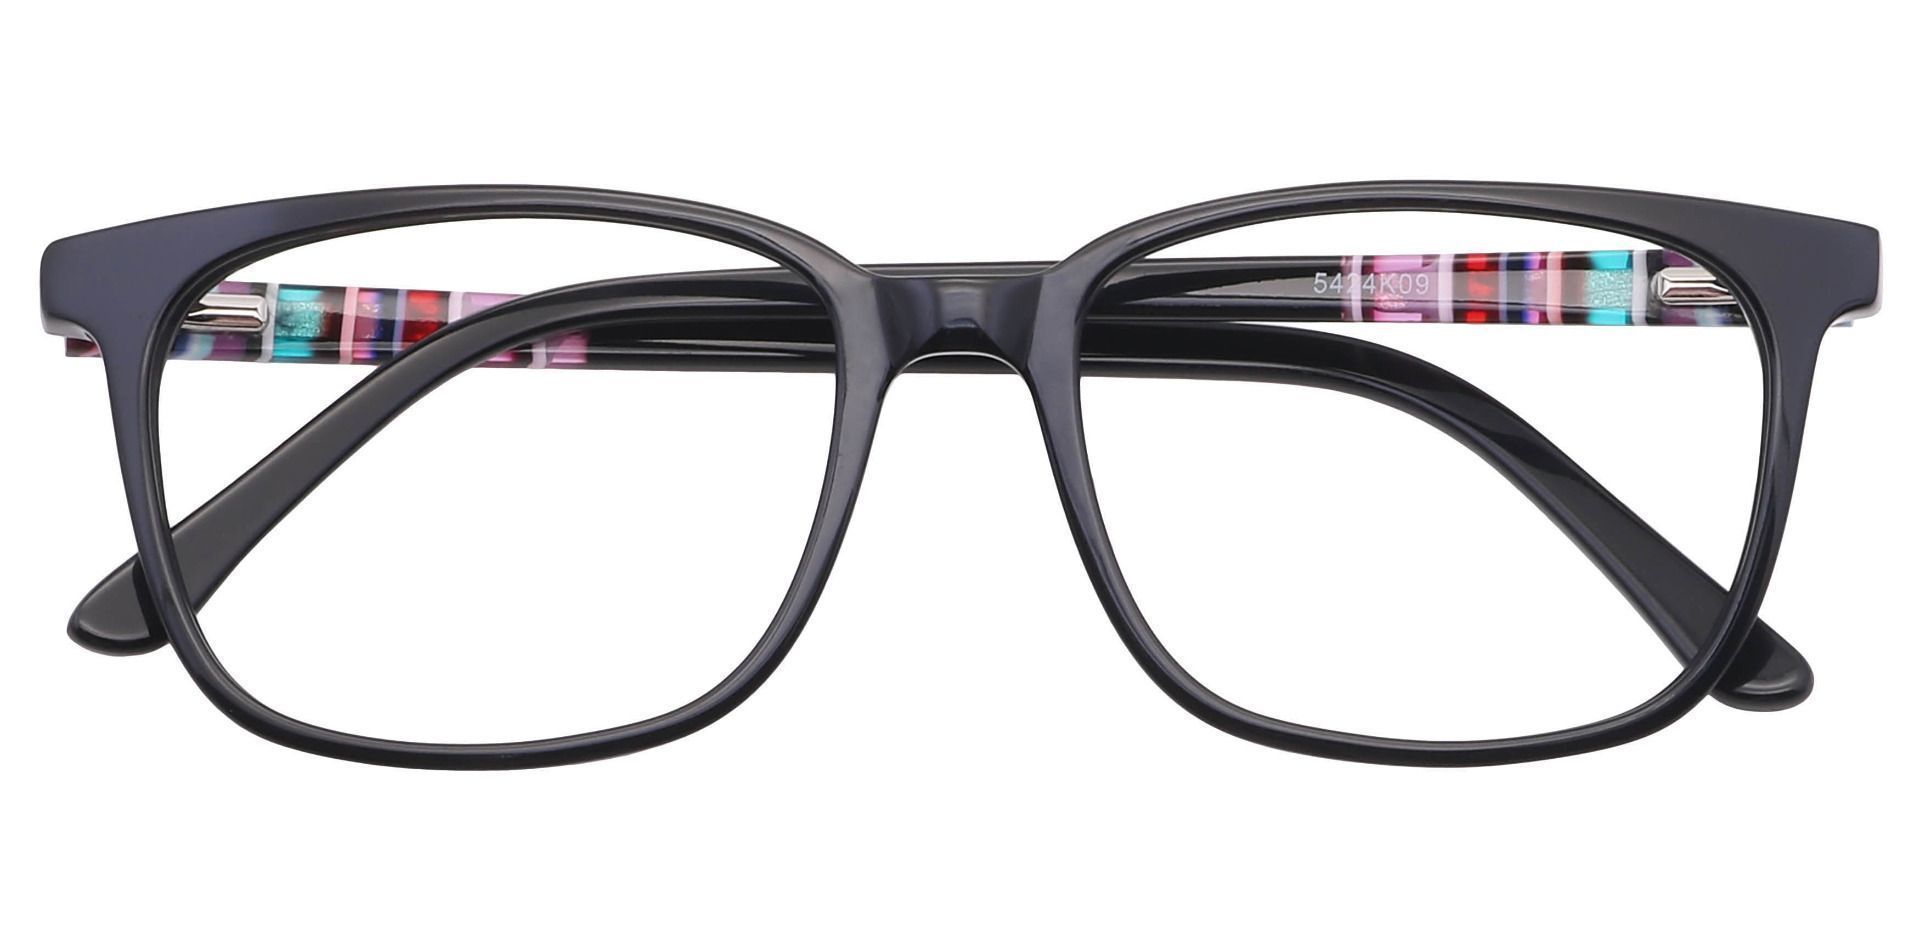 Fern Square Eyeglasses Frame - Black